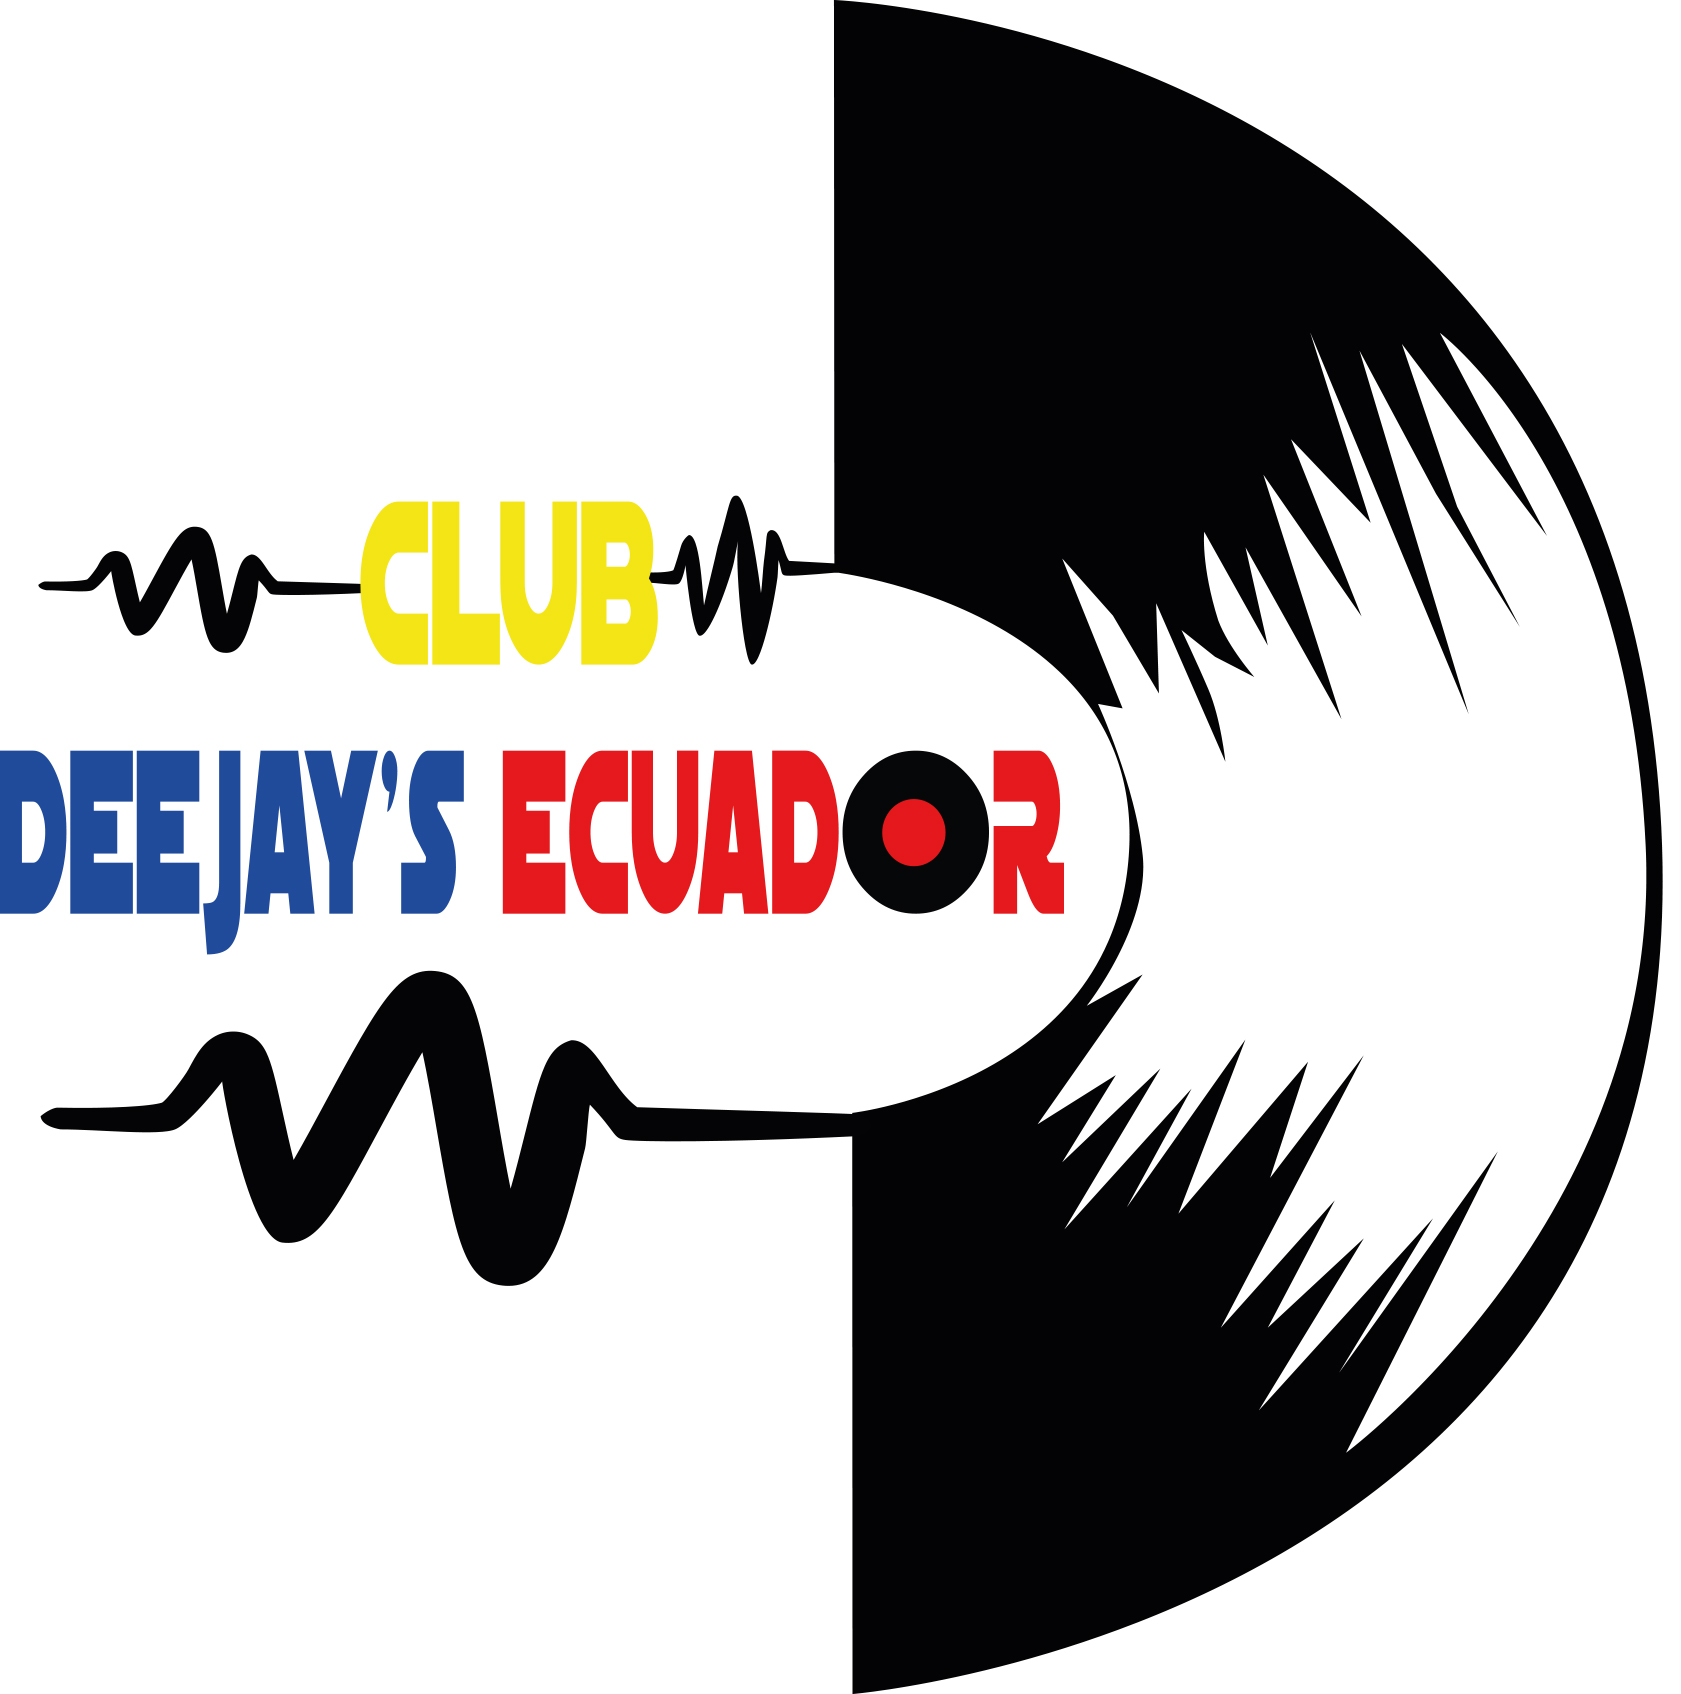 LOGO CLUB DEEJAYS ECUADOR